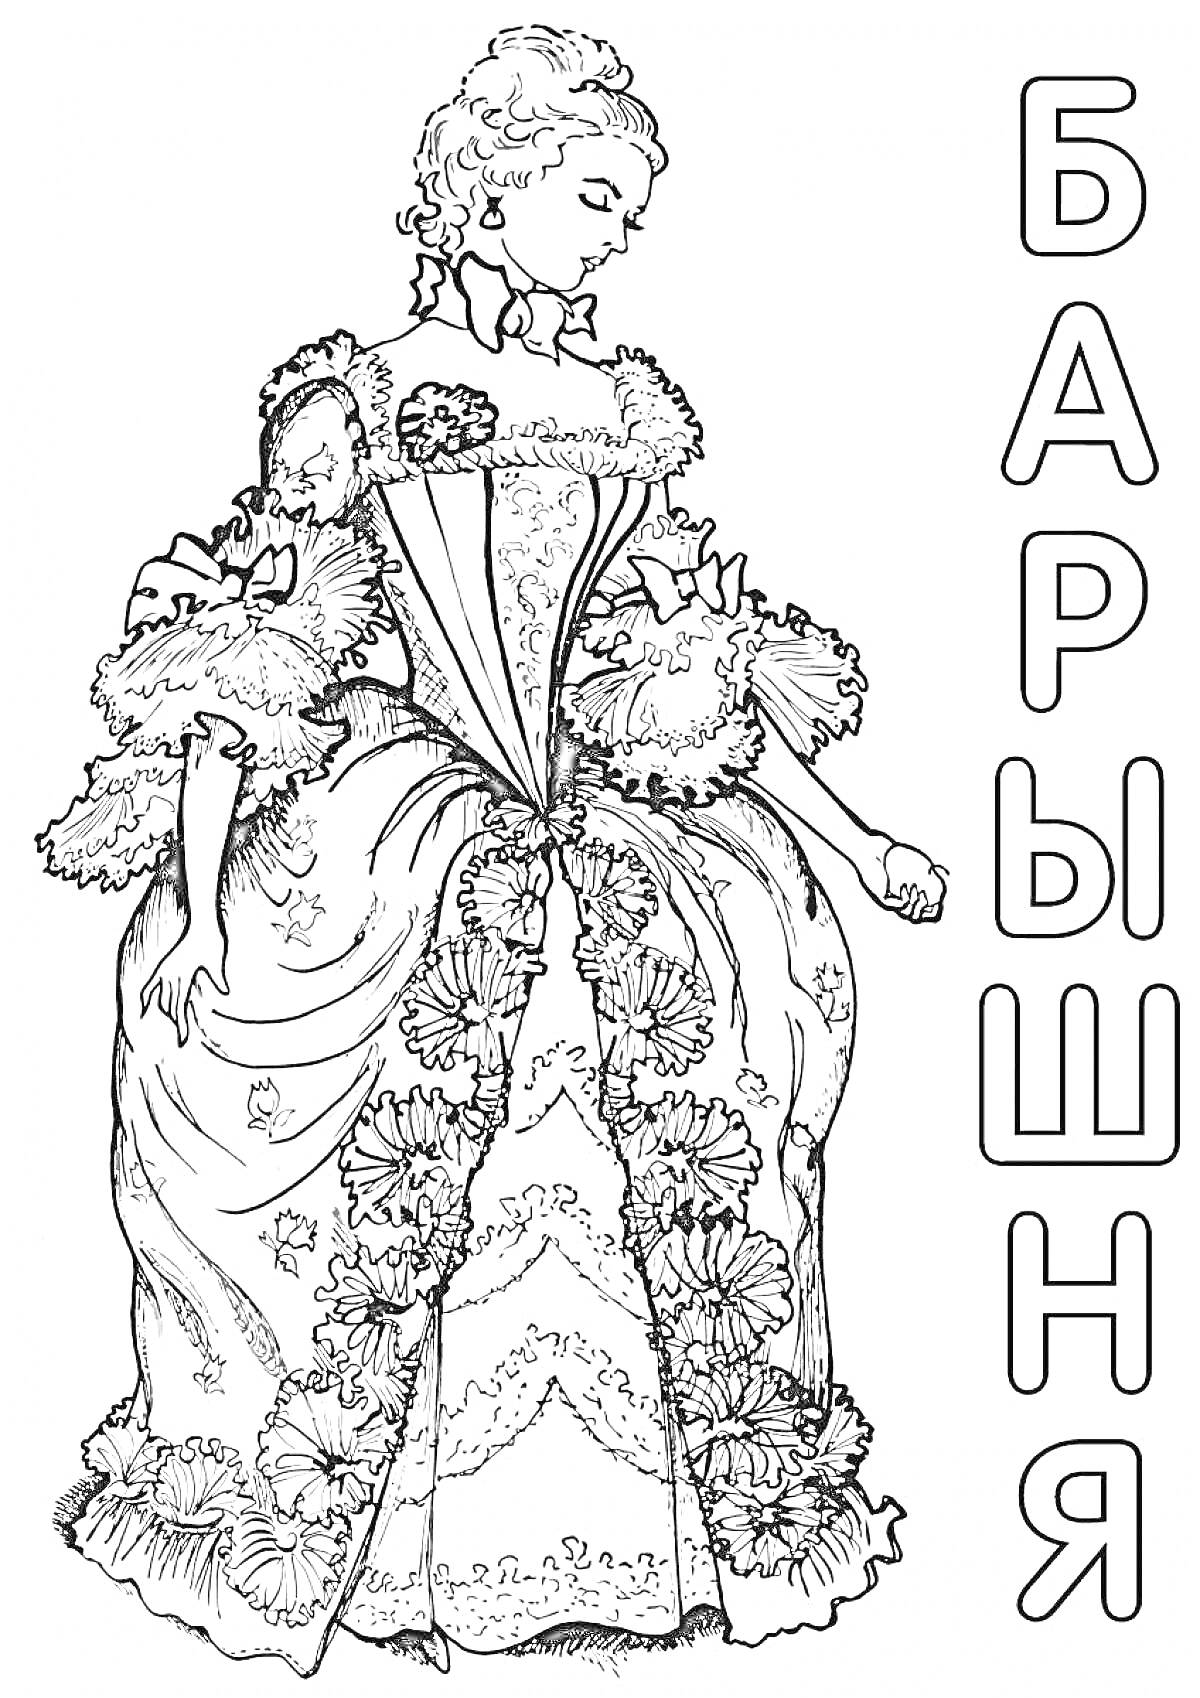 Барышня в пышном платье с декором, элементами кружев и цветочным узором, рядом надпись 